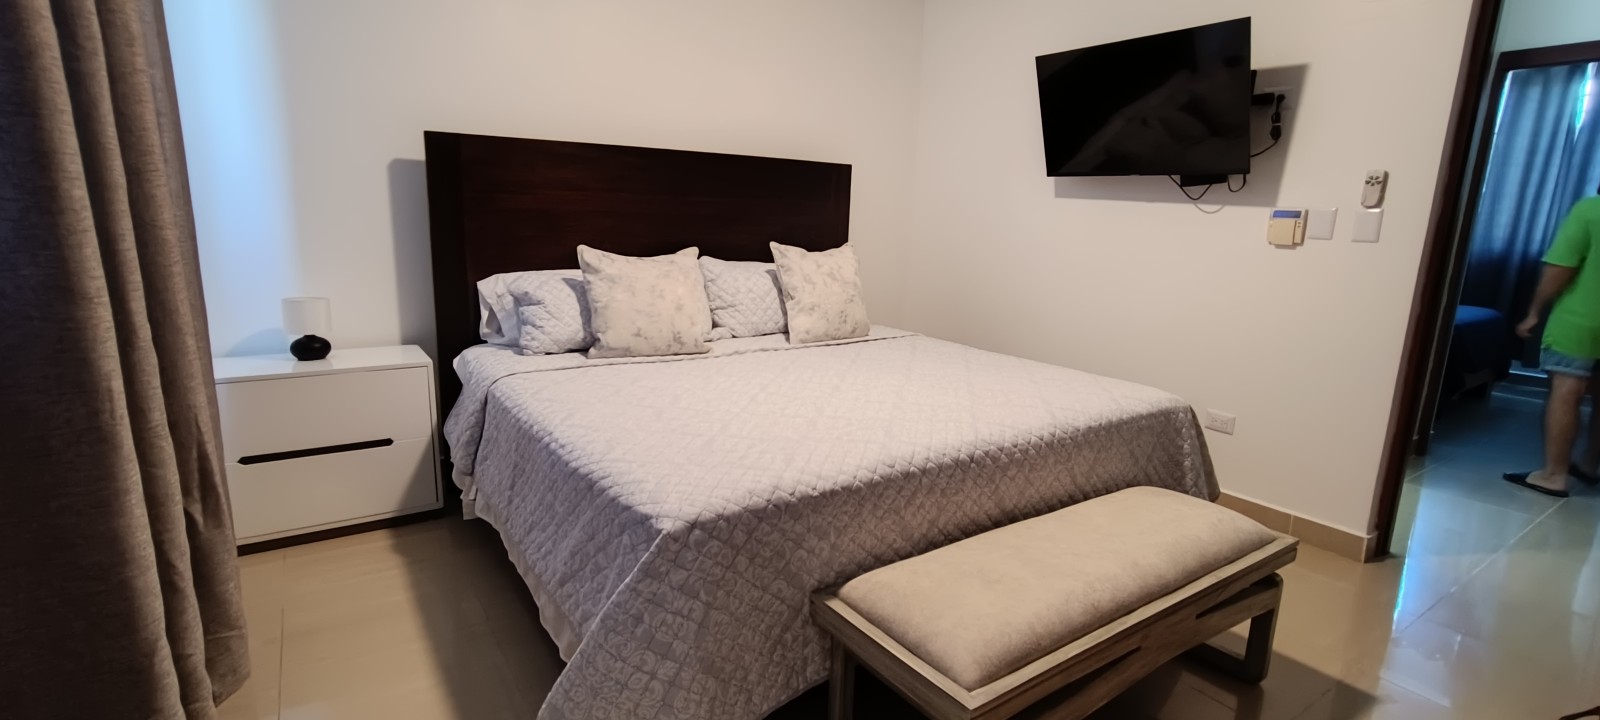 apartamentos - Vendo 4to piso Amueblado para inversión airbnb en el despertar 8